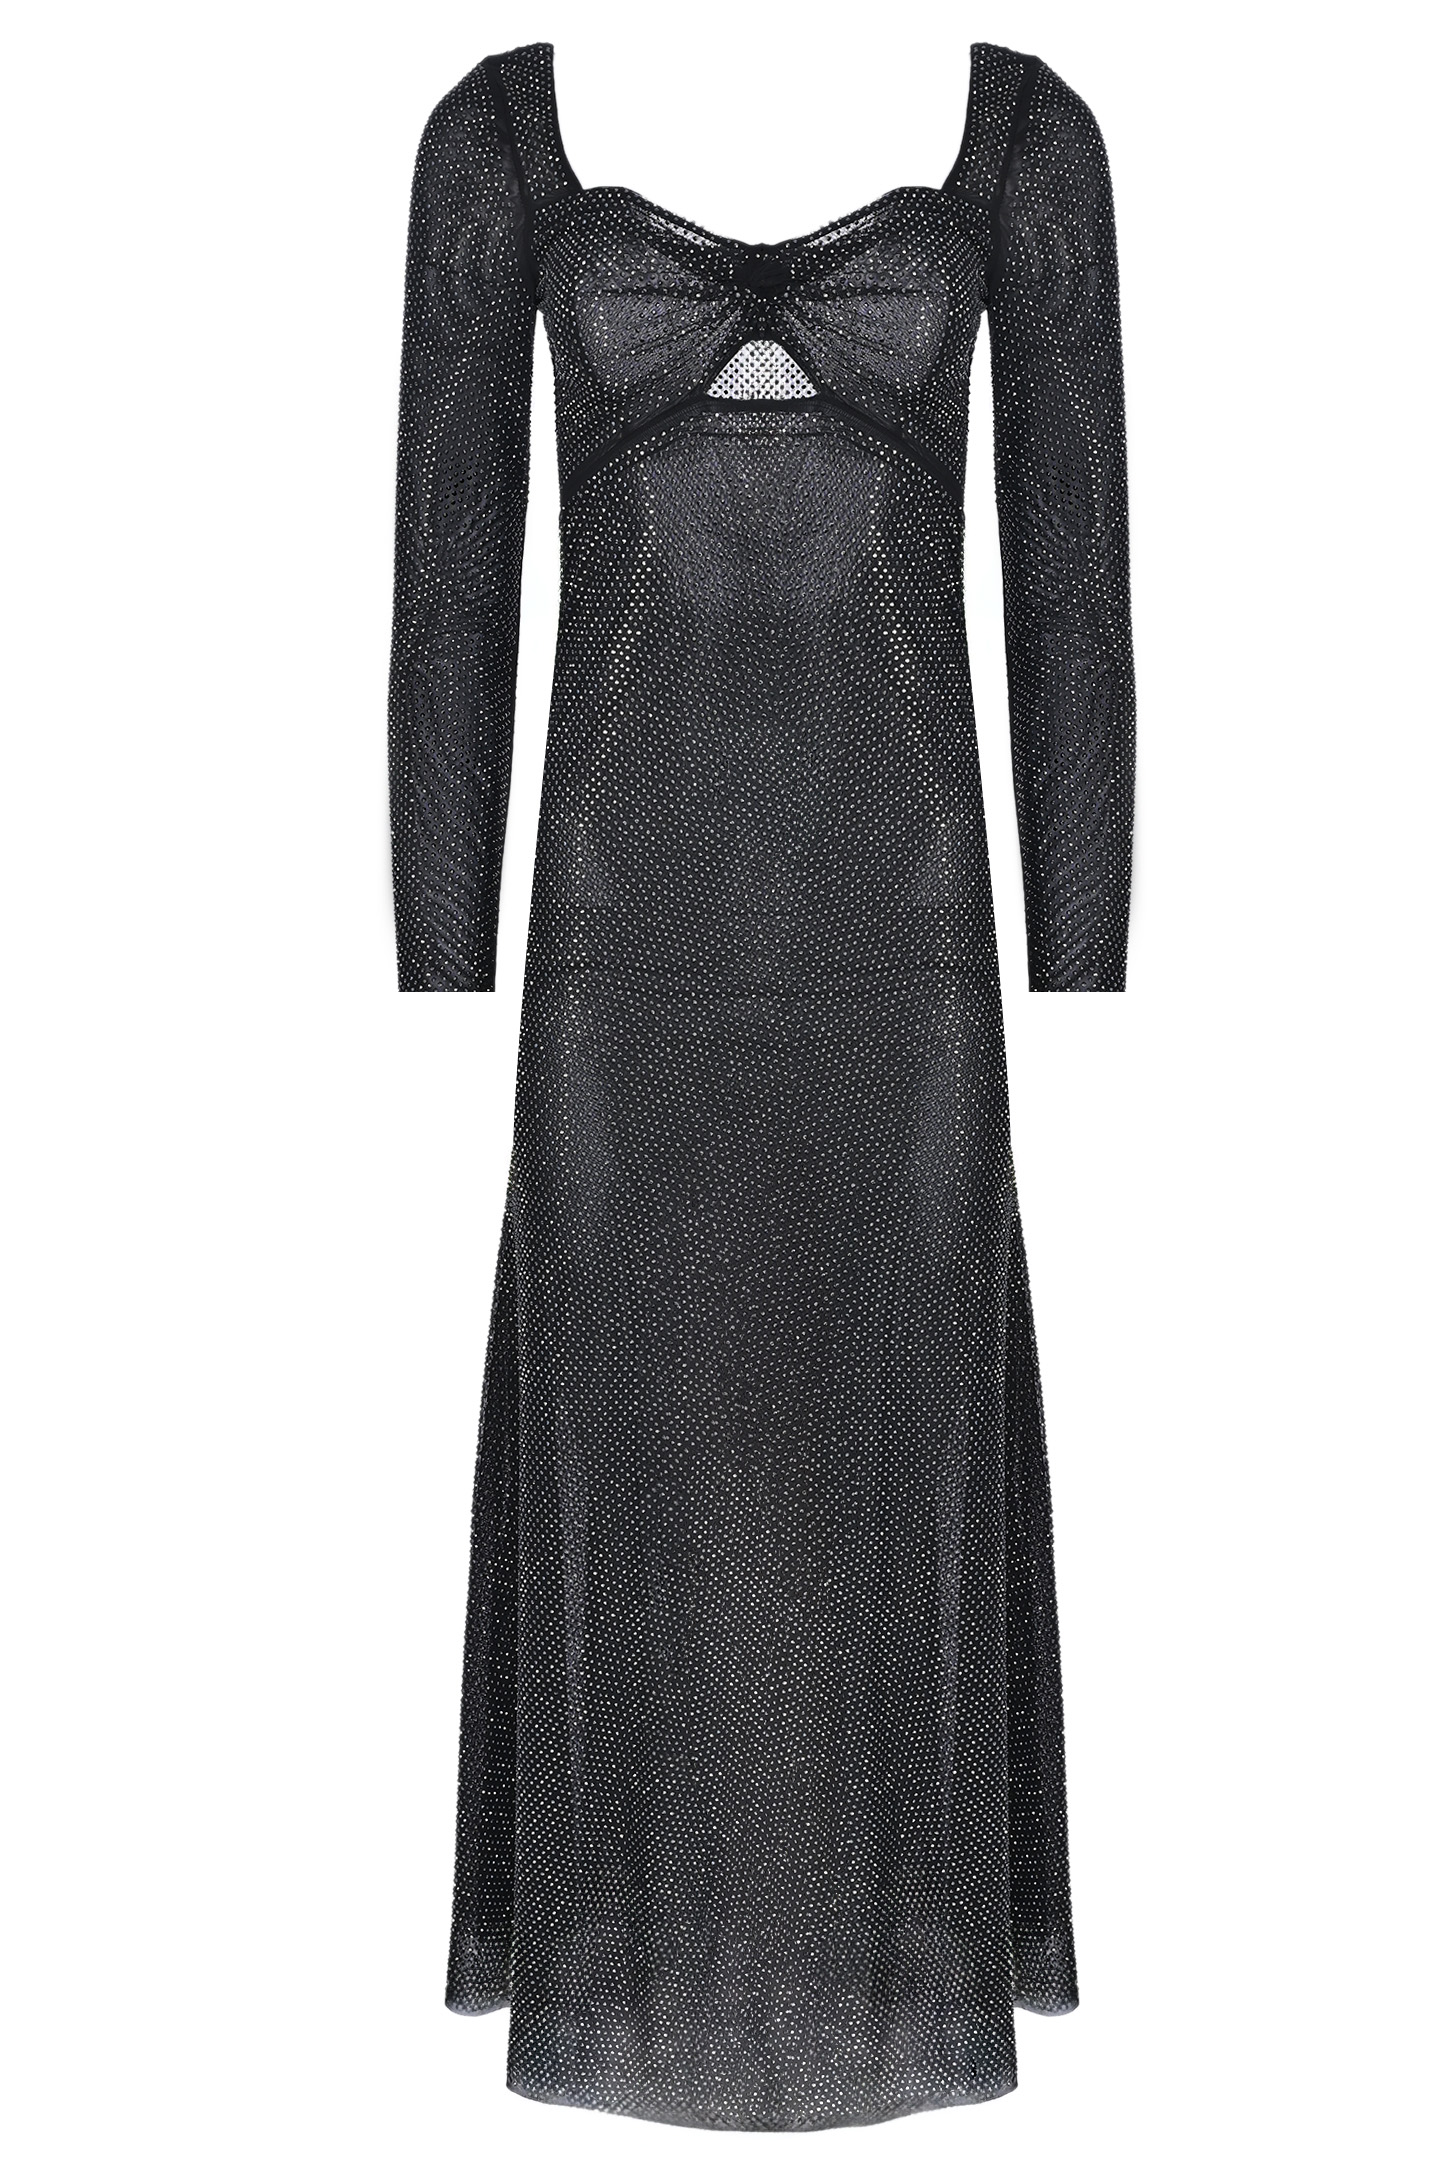 Платье SELF PORTRAIT RS24019MB, цвет: Черный, Женский